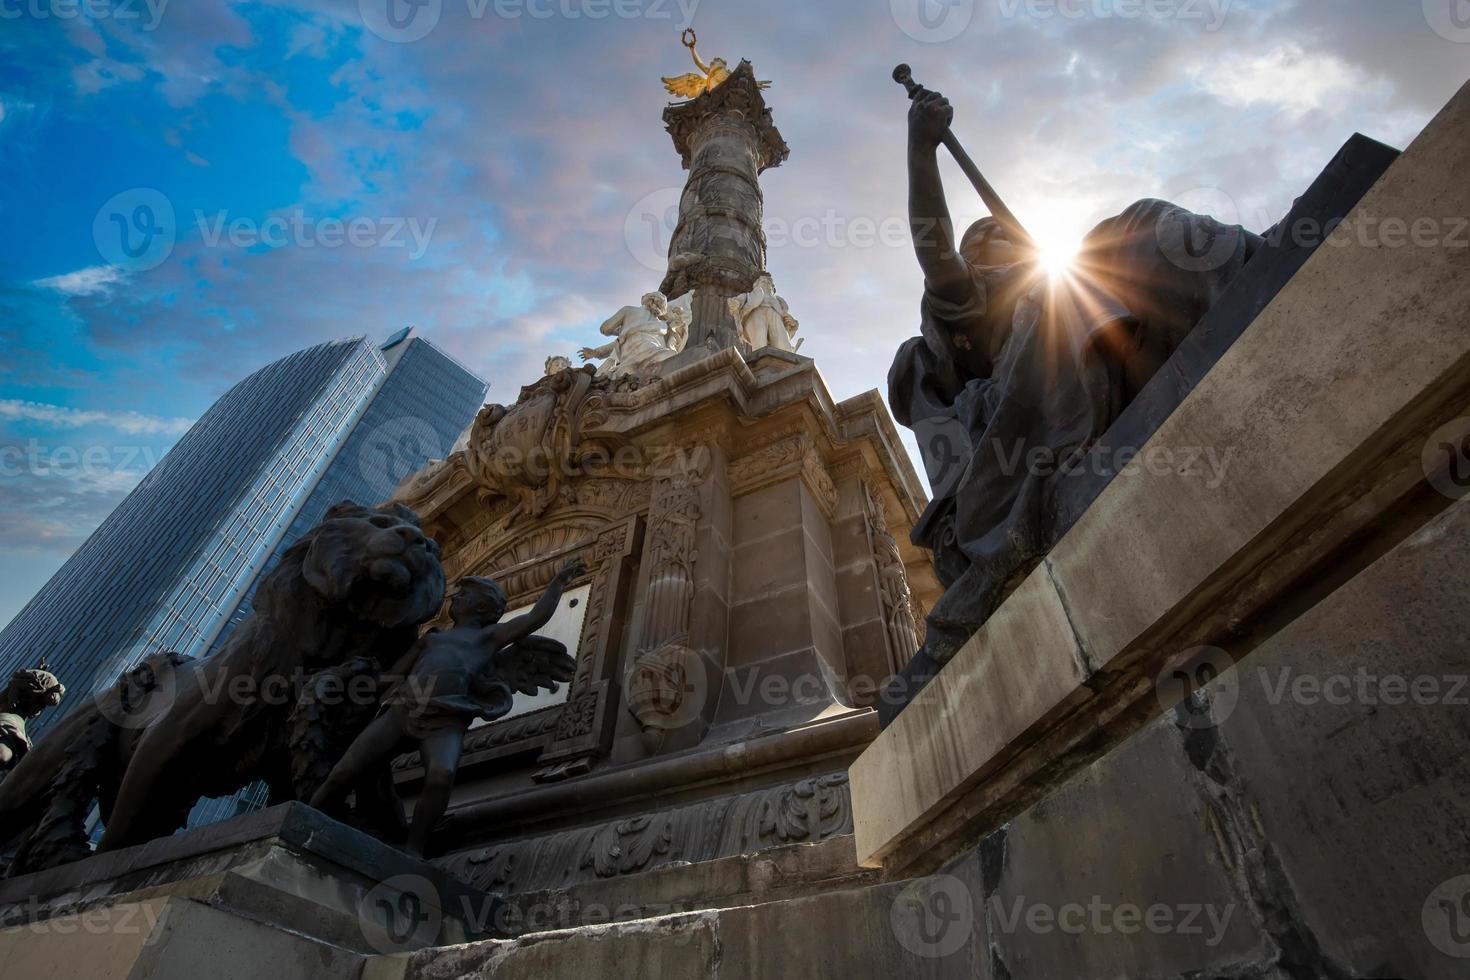 engel van onafhankelijkheidsmonument in het historische centrum van mexico-stad foto